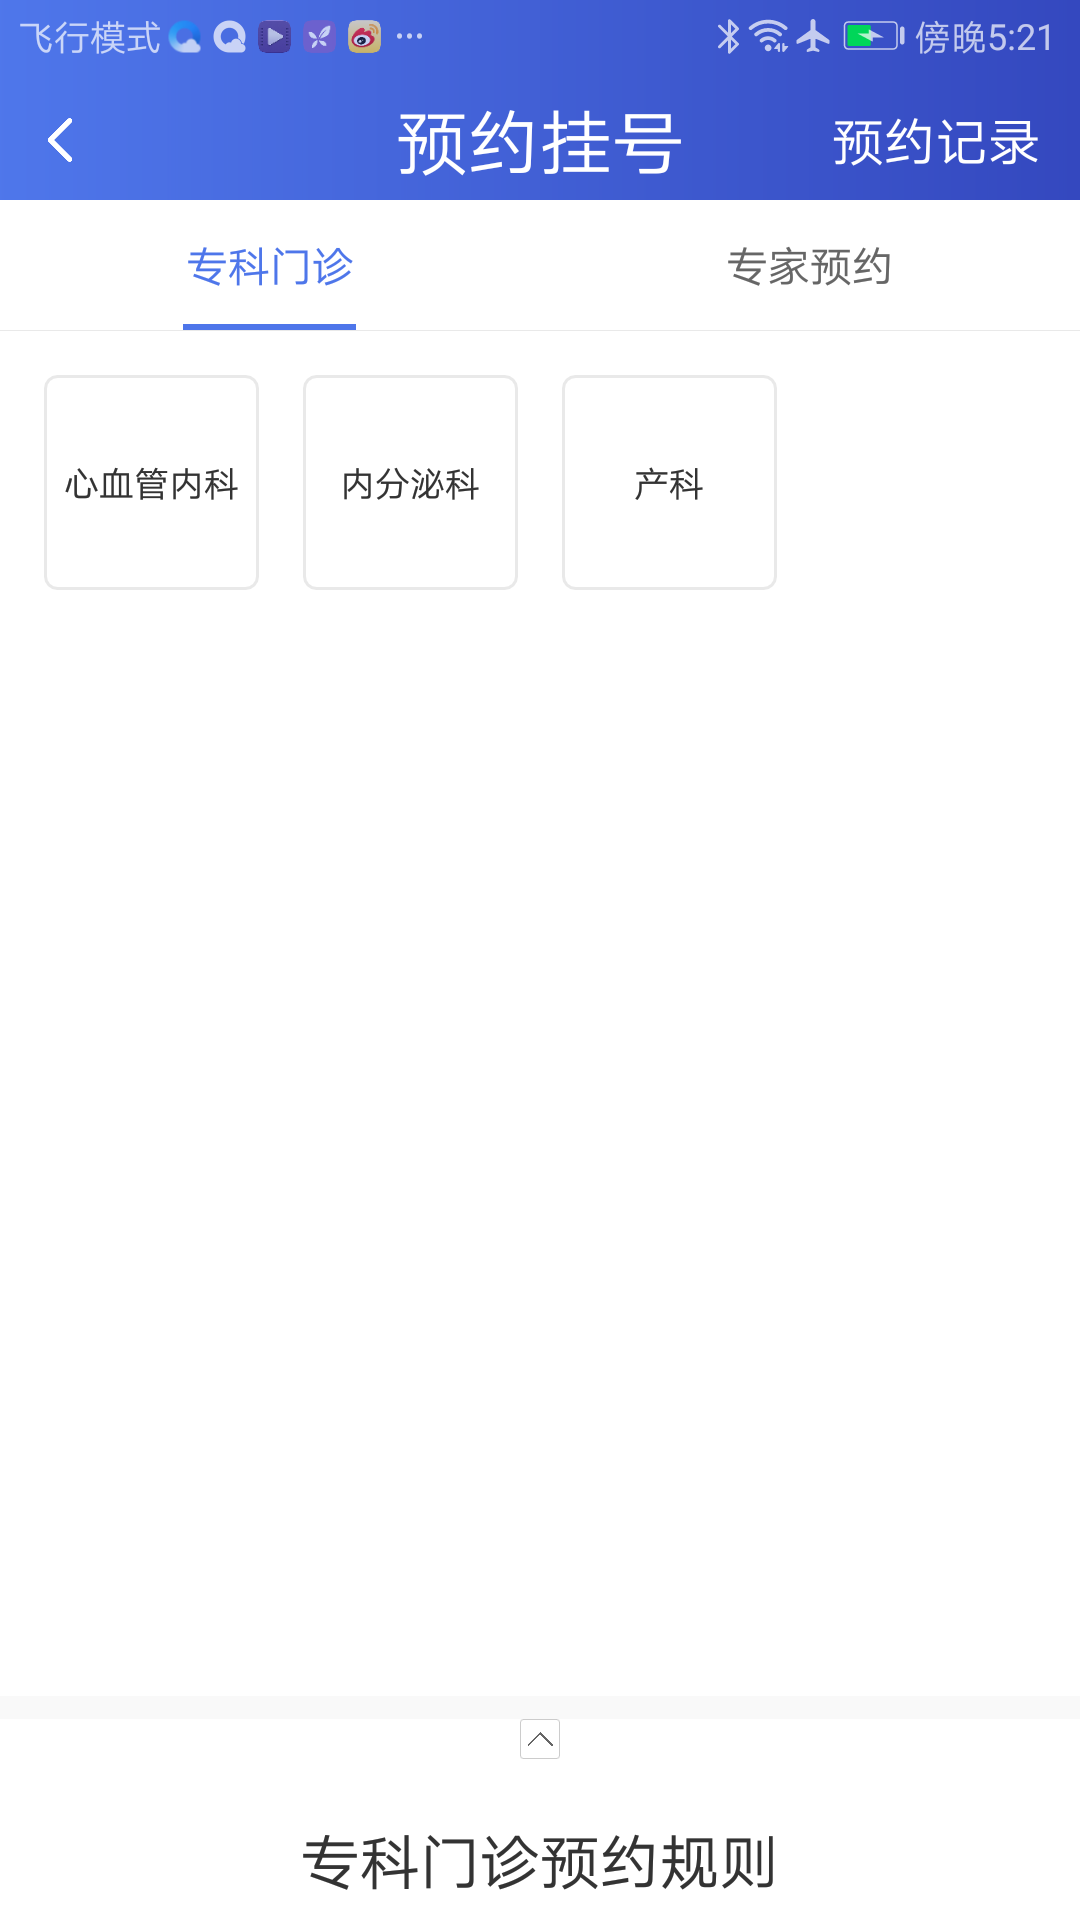 武大云医app图片1